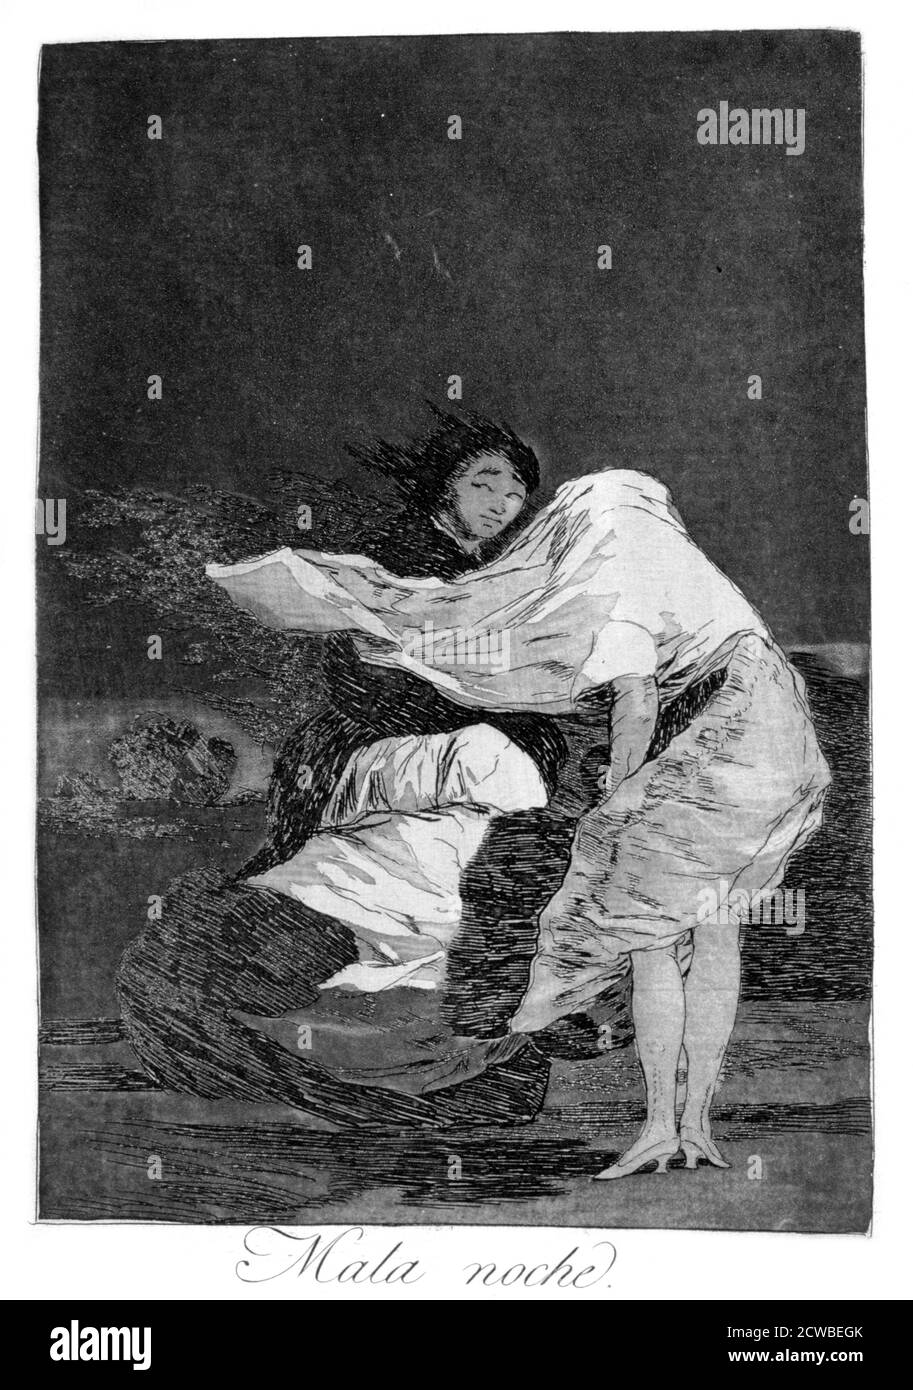 A Bad night', 1799 artista: Francisco Goya. Piastra 36 di "Los Caprichos". Los Caprichos sono un set di 80 stampe in acquatint e acquaforte create dall'artista spagnolo Francisco Goya nel 1797 e nel 1798, e pubblicate come album nel 1799. Foto Stock